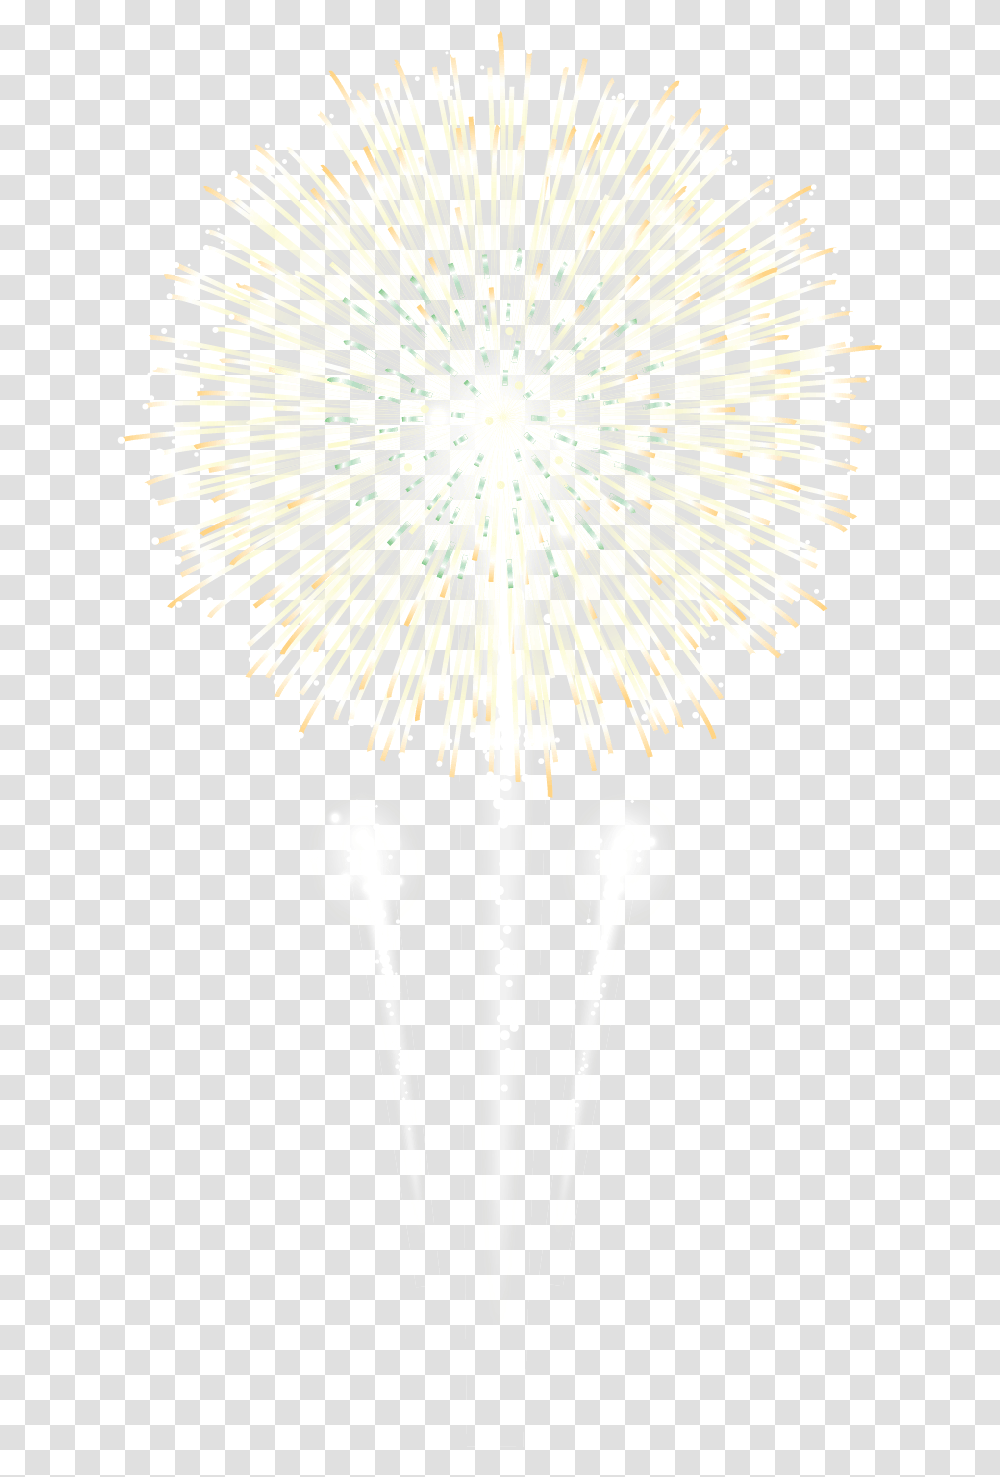 Download Fireworks Image With No Fireworks, Plant, Flower, Blossom, Lighting Transparent Png